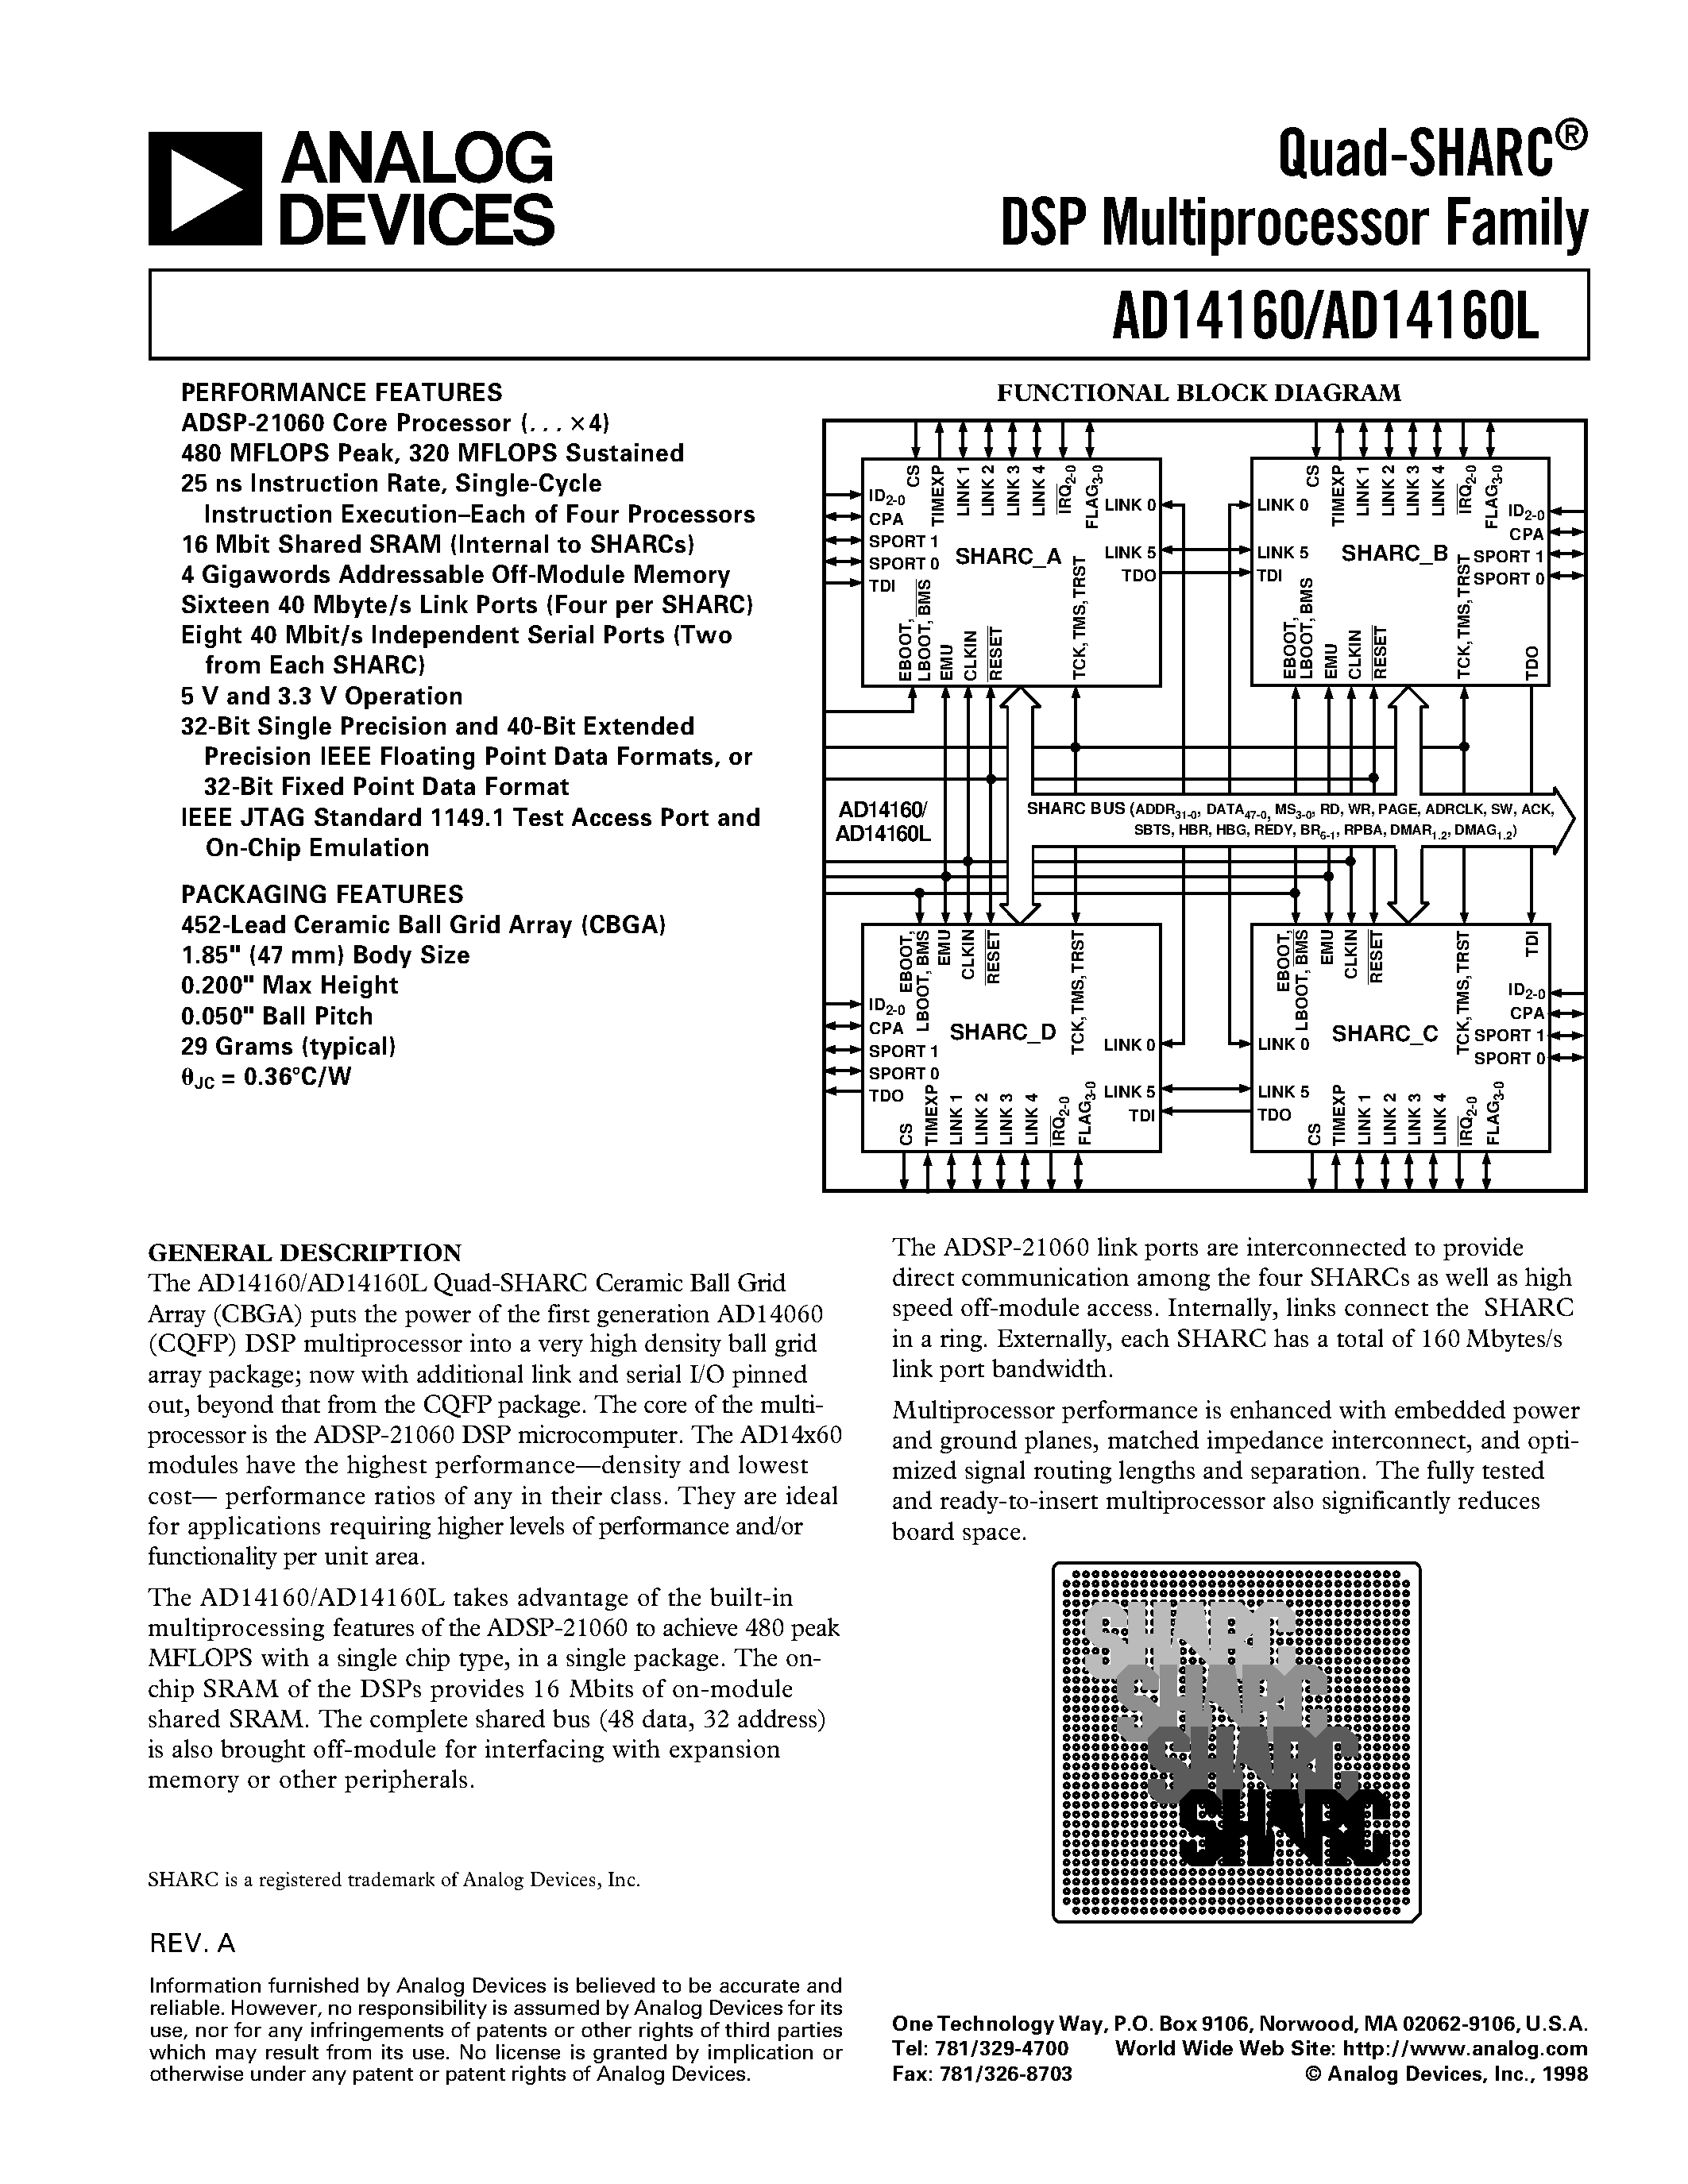 Даташит AD14160LKB-4 - Quad-SHARC DSP Multiprocessor Family страница 1